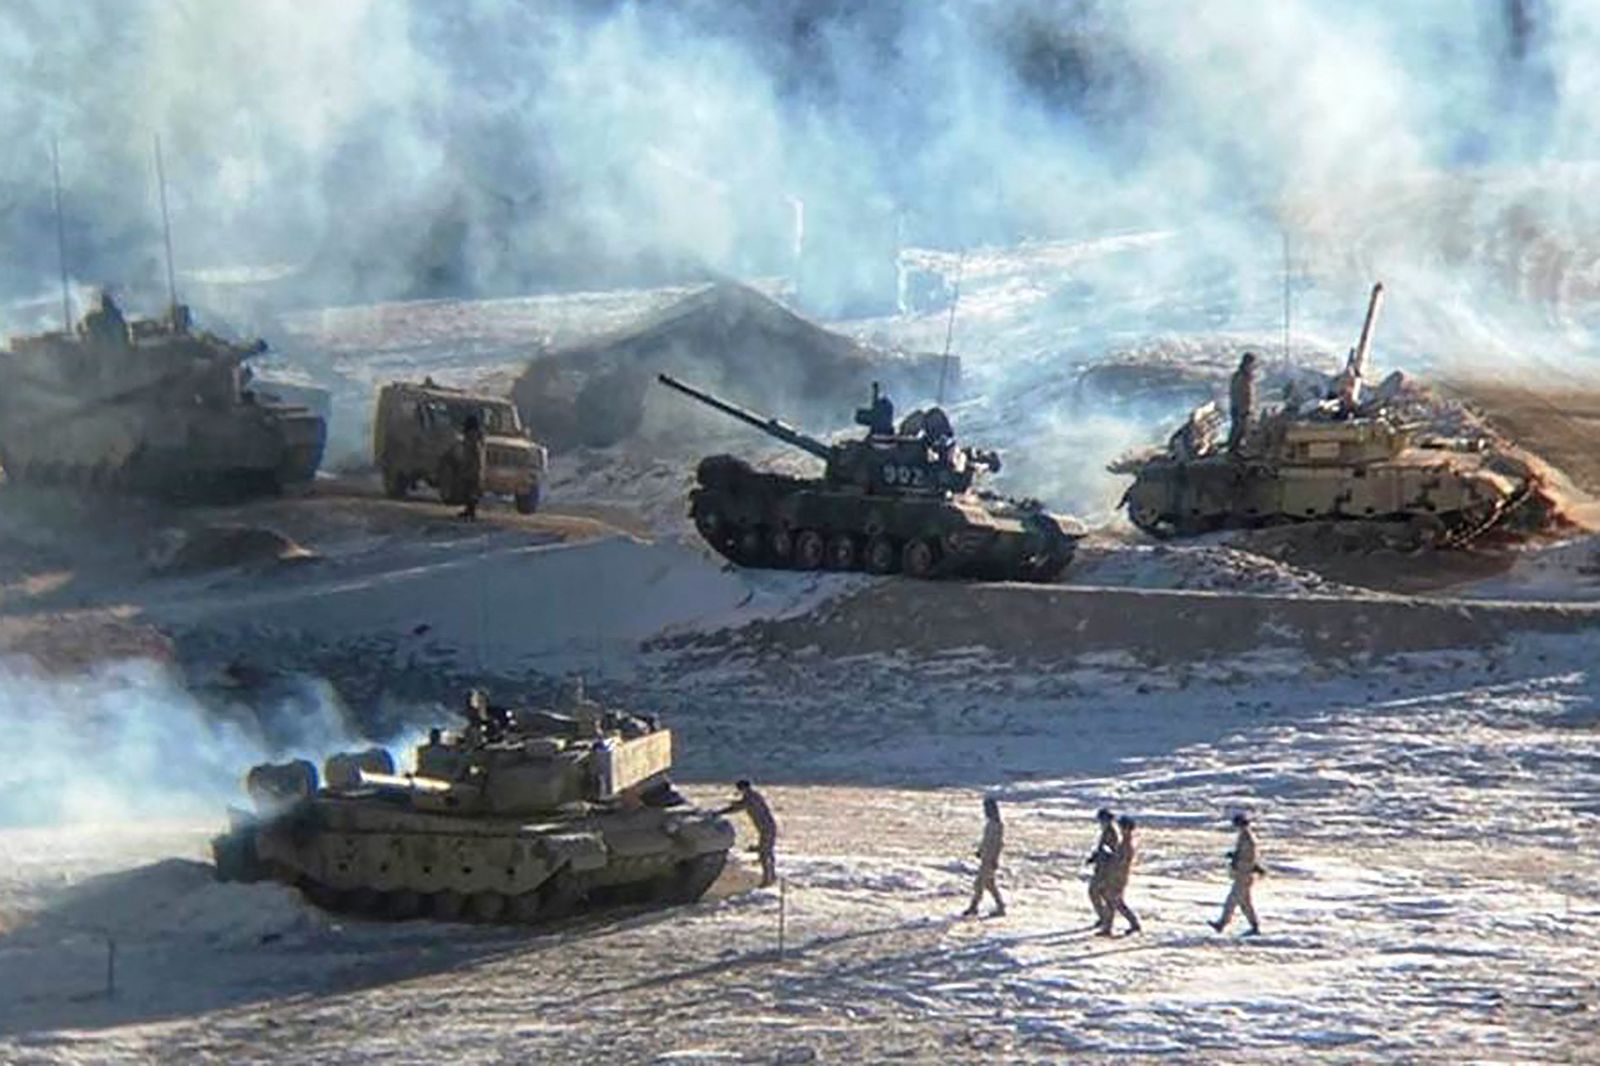 صورة نشرها الجيش الهندي في 16 فبراير 2021 لجنود ودبابات للجيش الصيني أثناء فكّ اشتباك عسكري على 